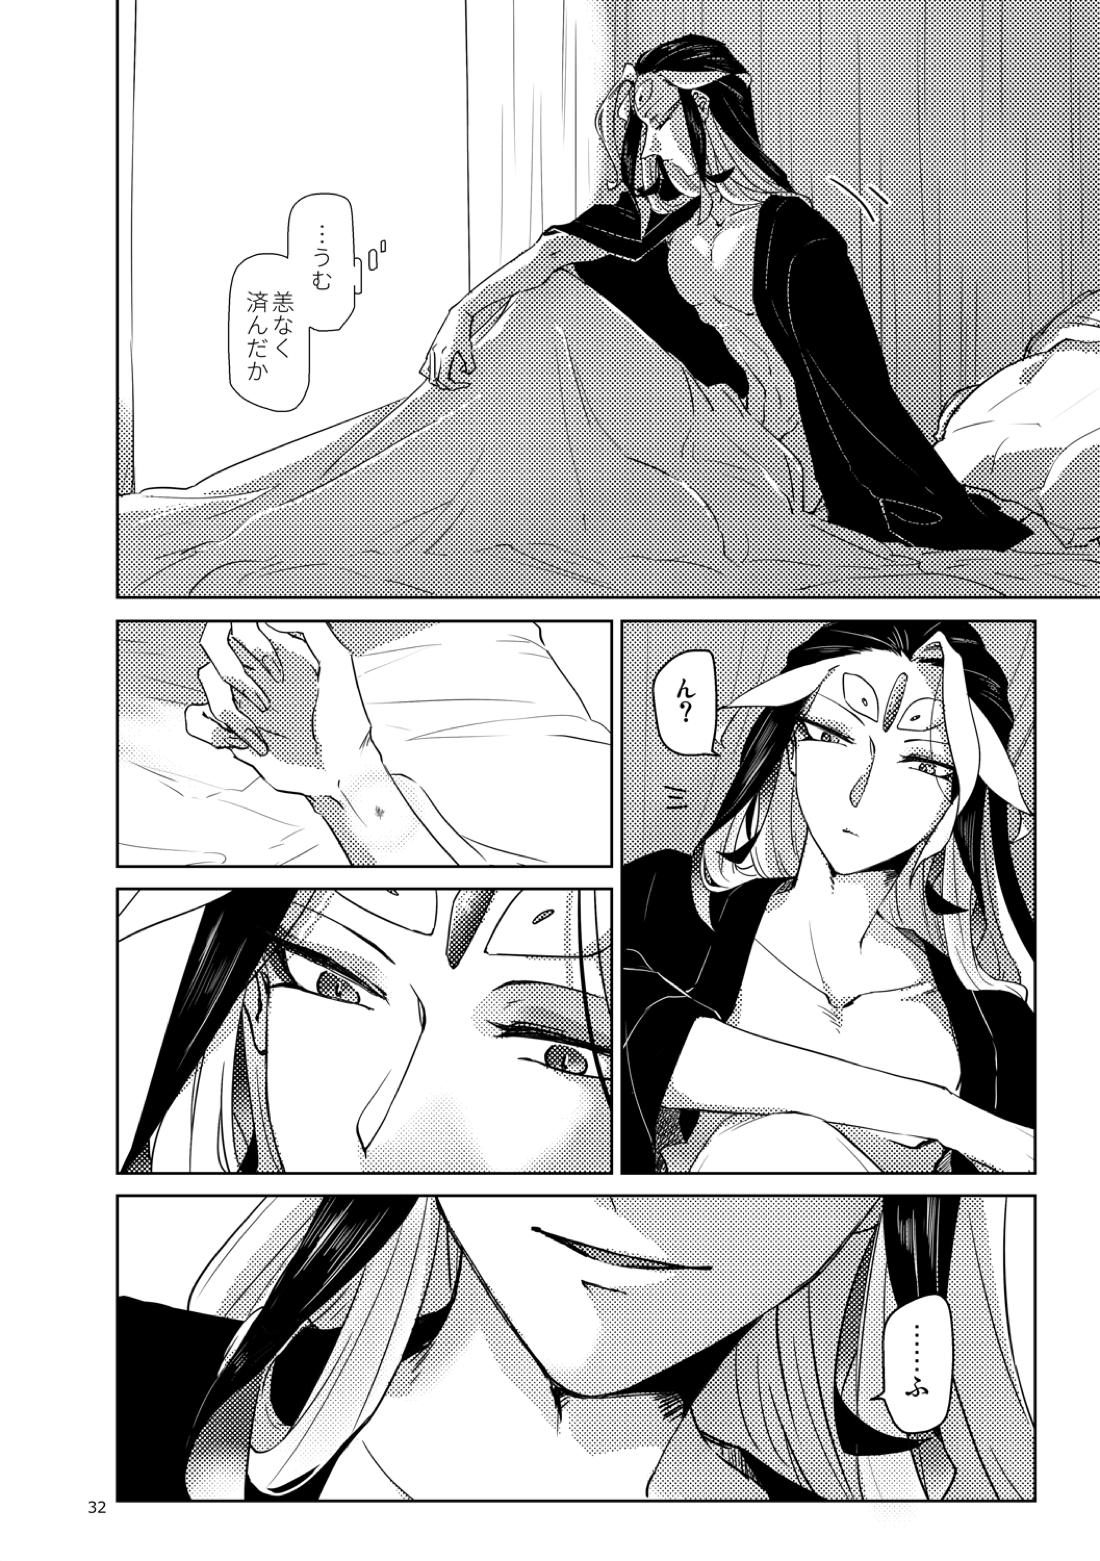 【BL漫画 Fate/Grand Order】男性体と無性体の始皇帝が同期するために媚薬を口にしながら肌を重ねるイチャイチャボーイズラブエッチ33